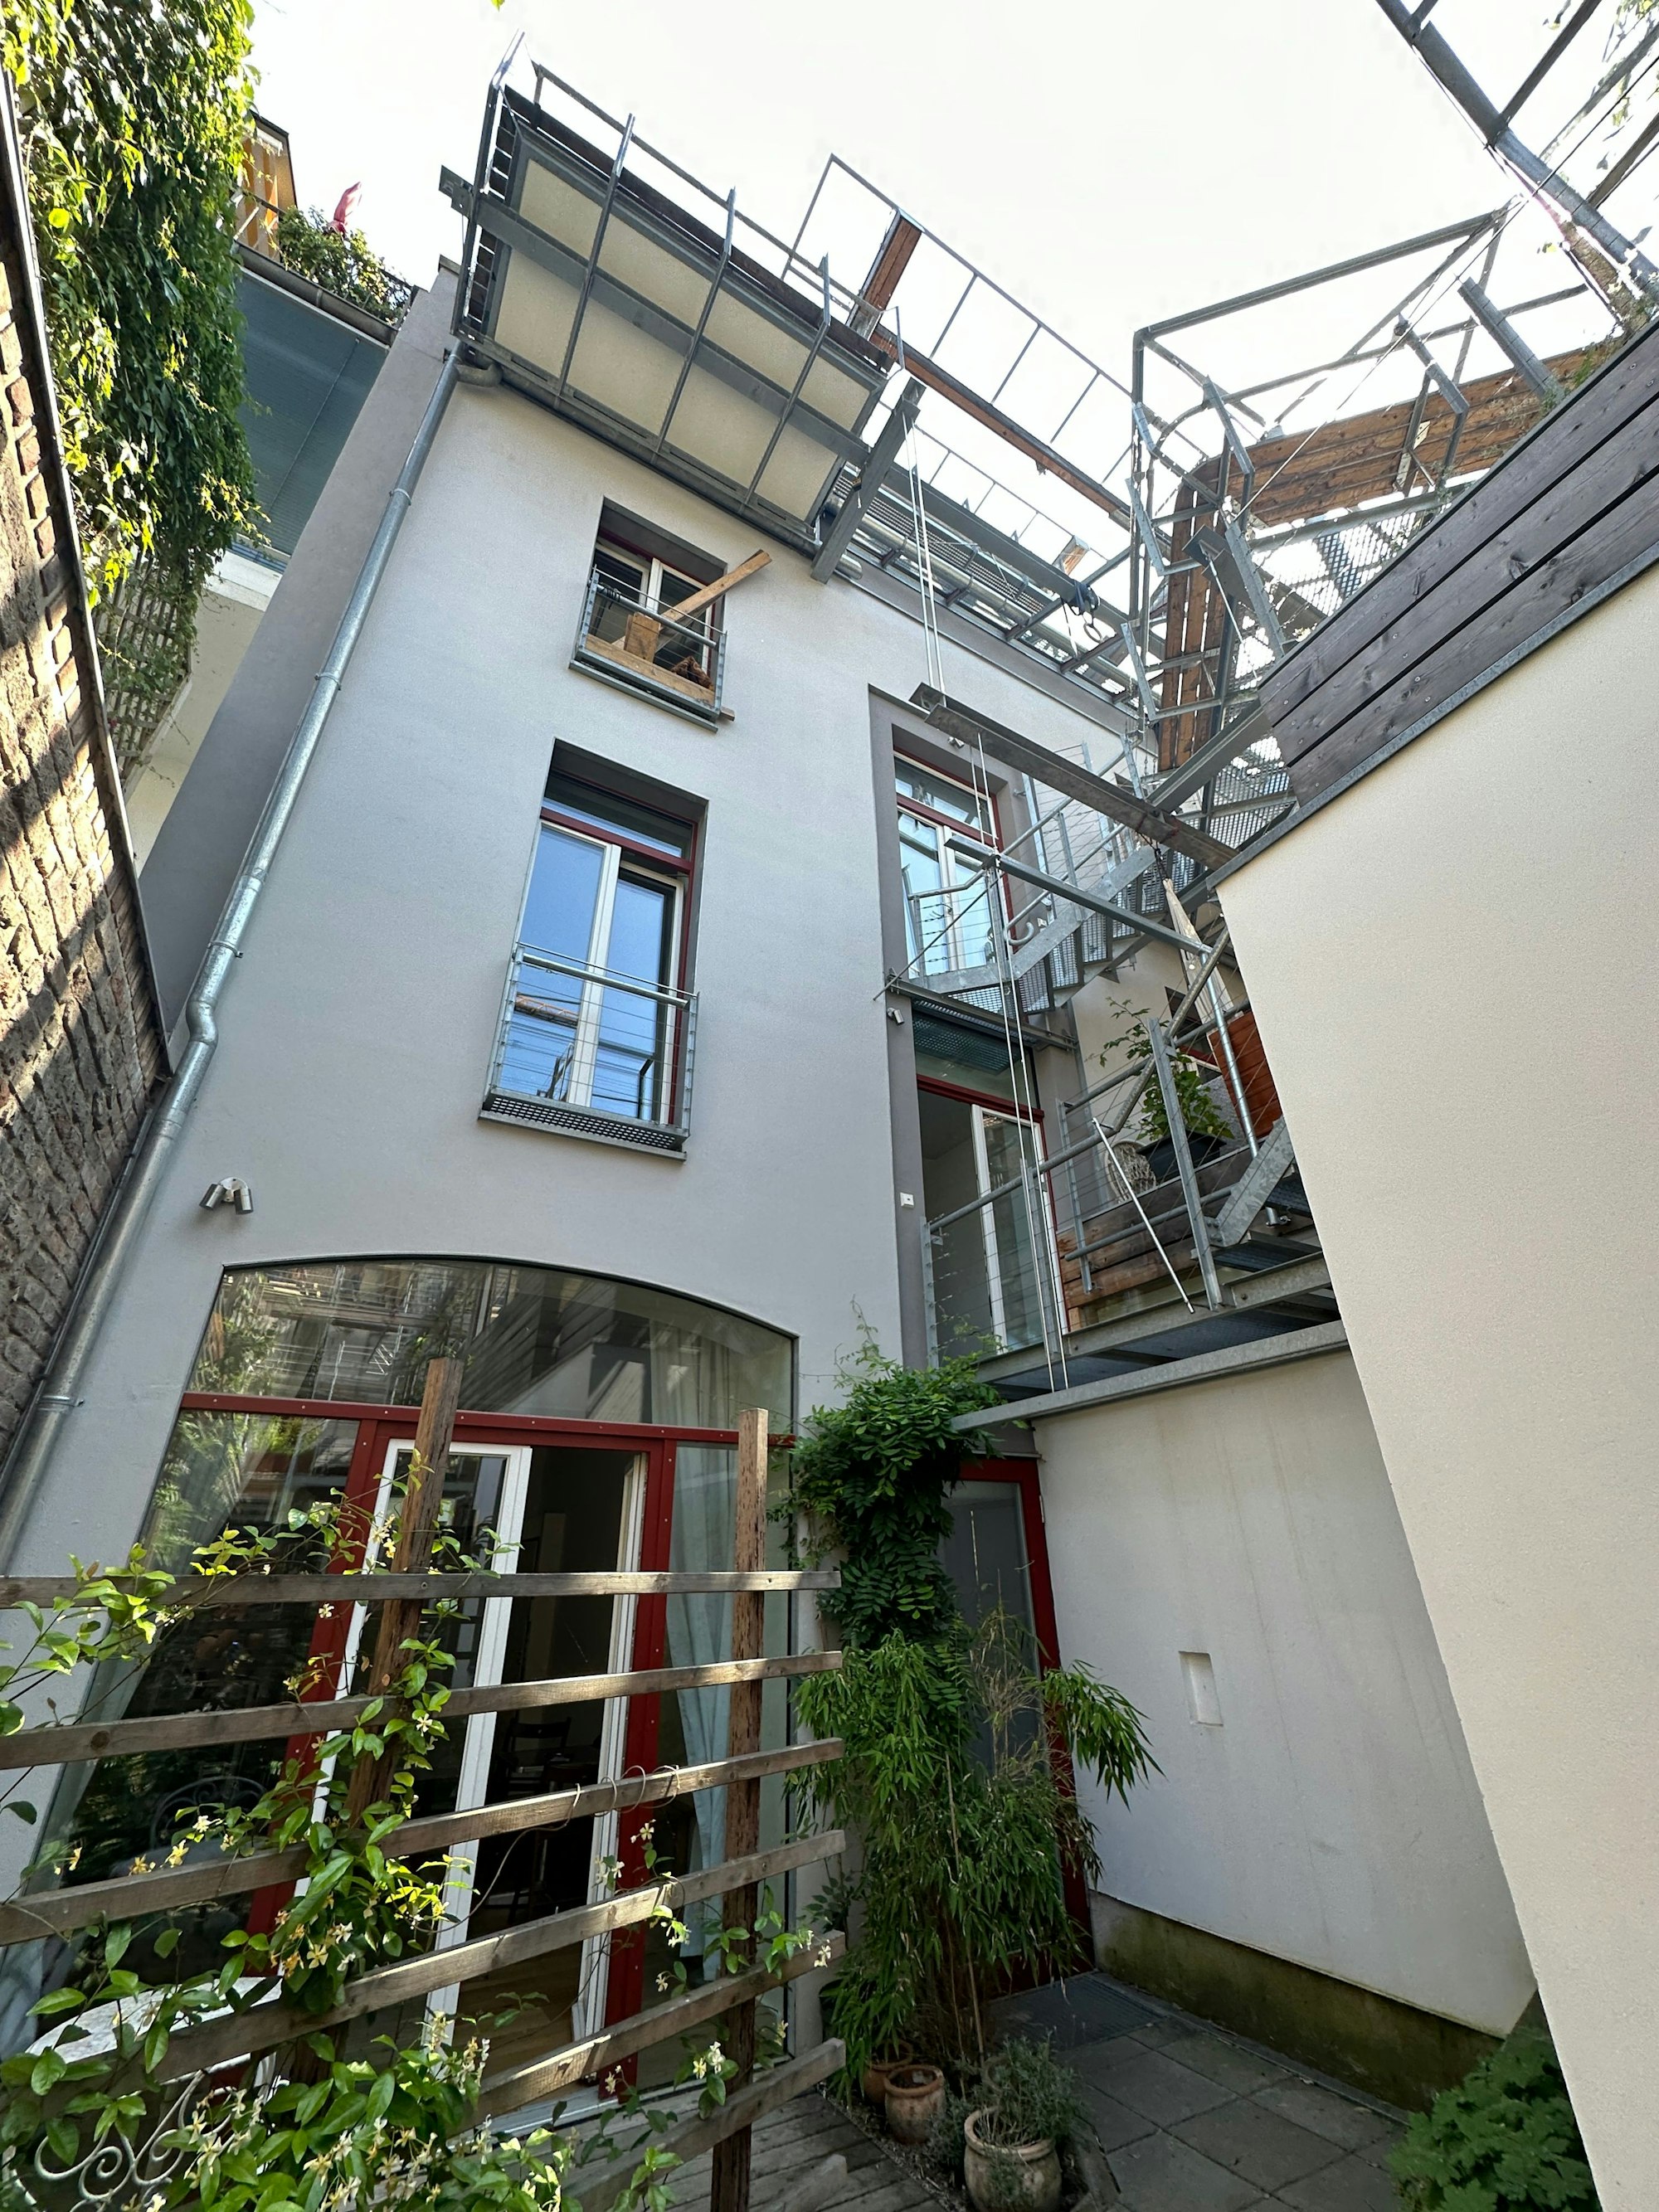 Im kleinen Innenhof ist ein Rankgitter zu sehen, eine Treppe führt zur Dachterrasse.